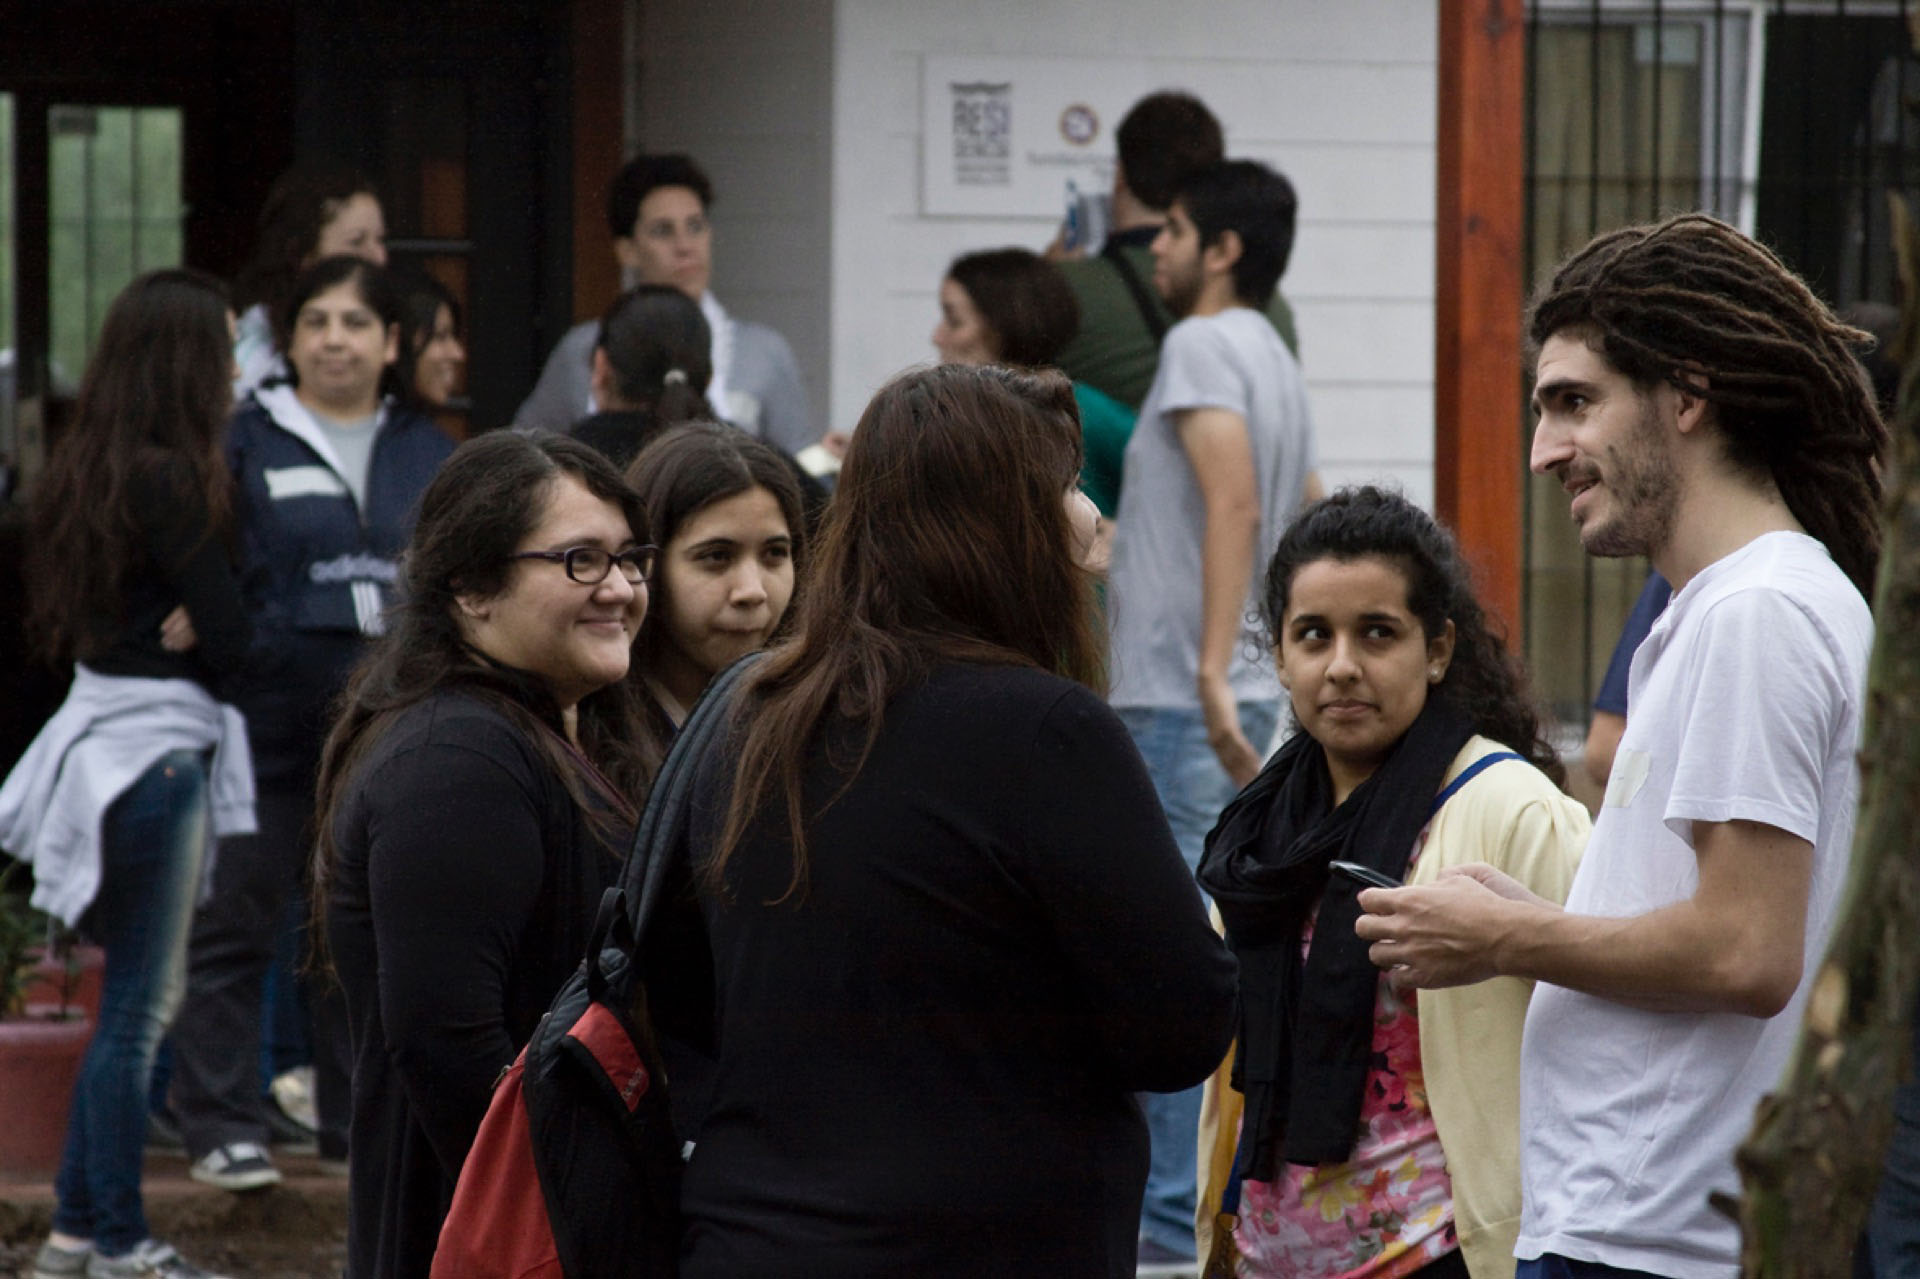 Manuel conversando con algunos de los aspirantes a las residencias universitarias.